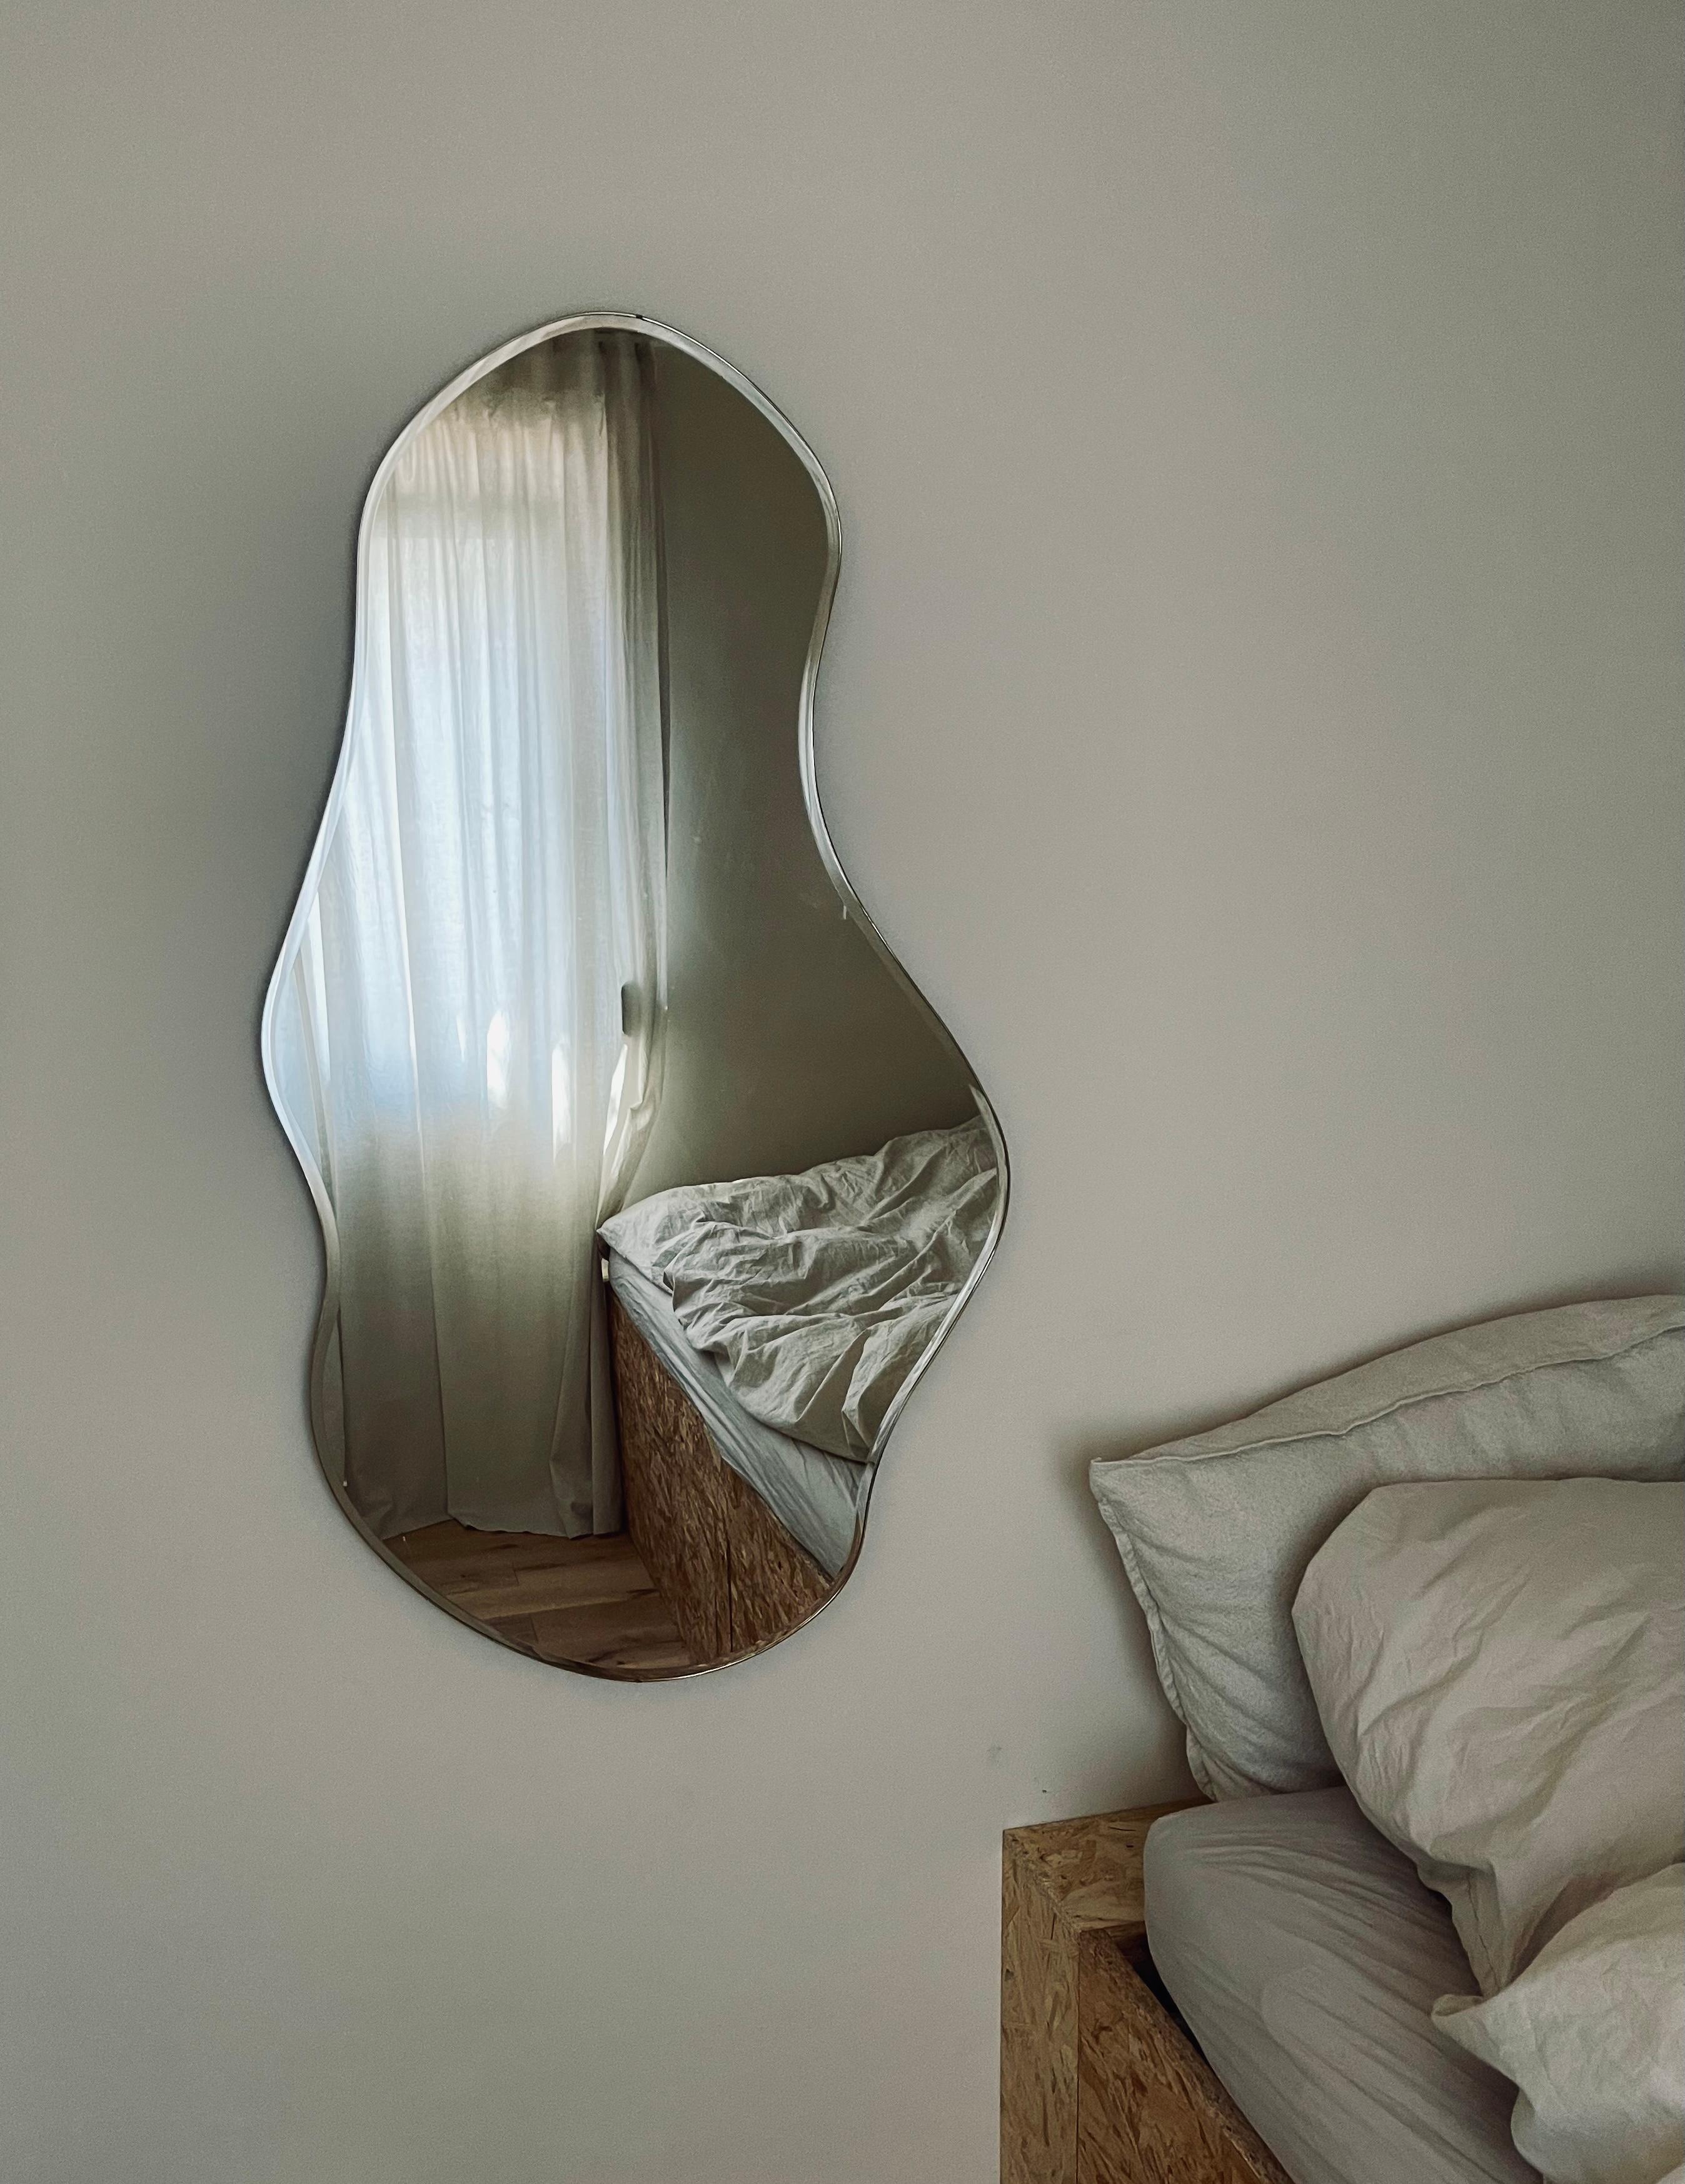 Cozy in neutrals #cozy #mono #bedroominspo #bedroom #beddiy #diy #minimalismus #housenine #pond #pondspiegel